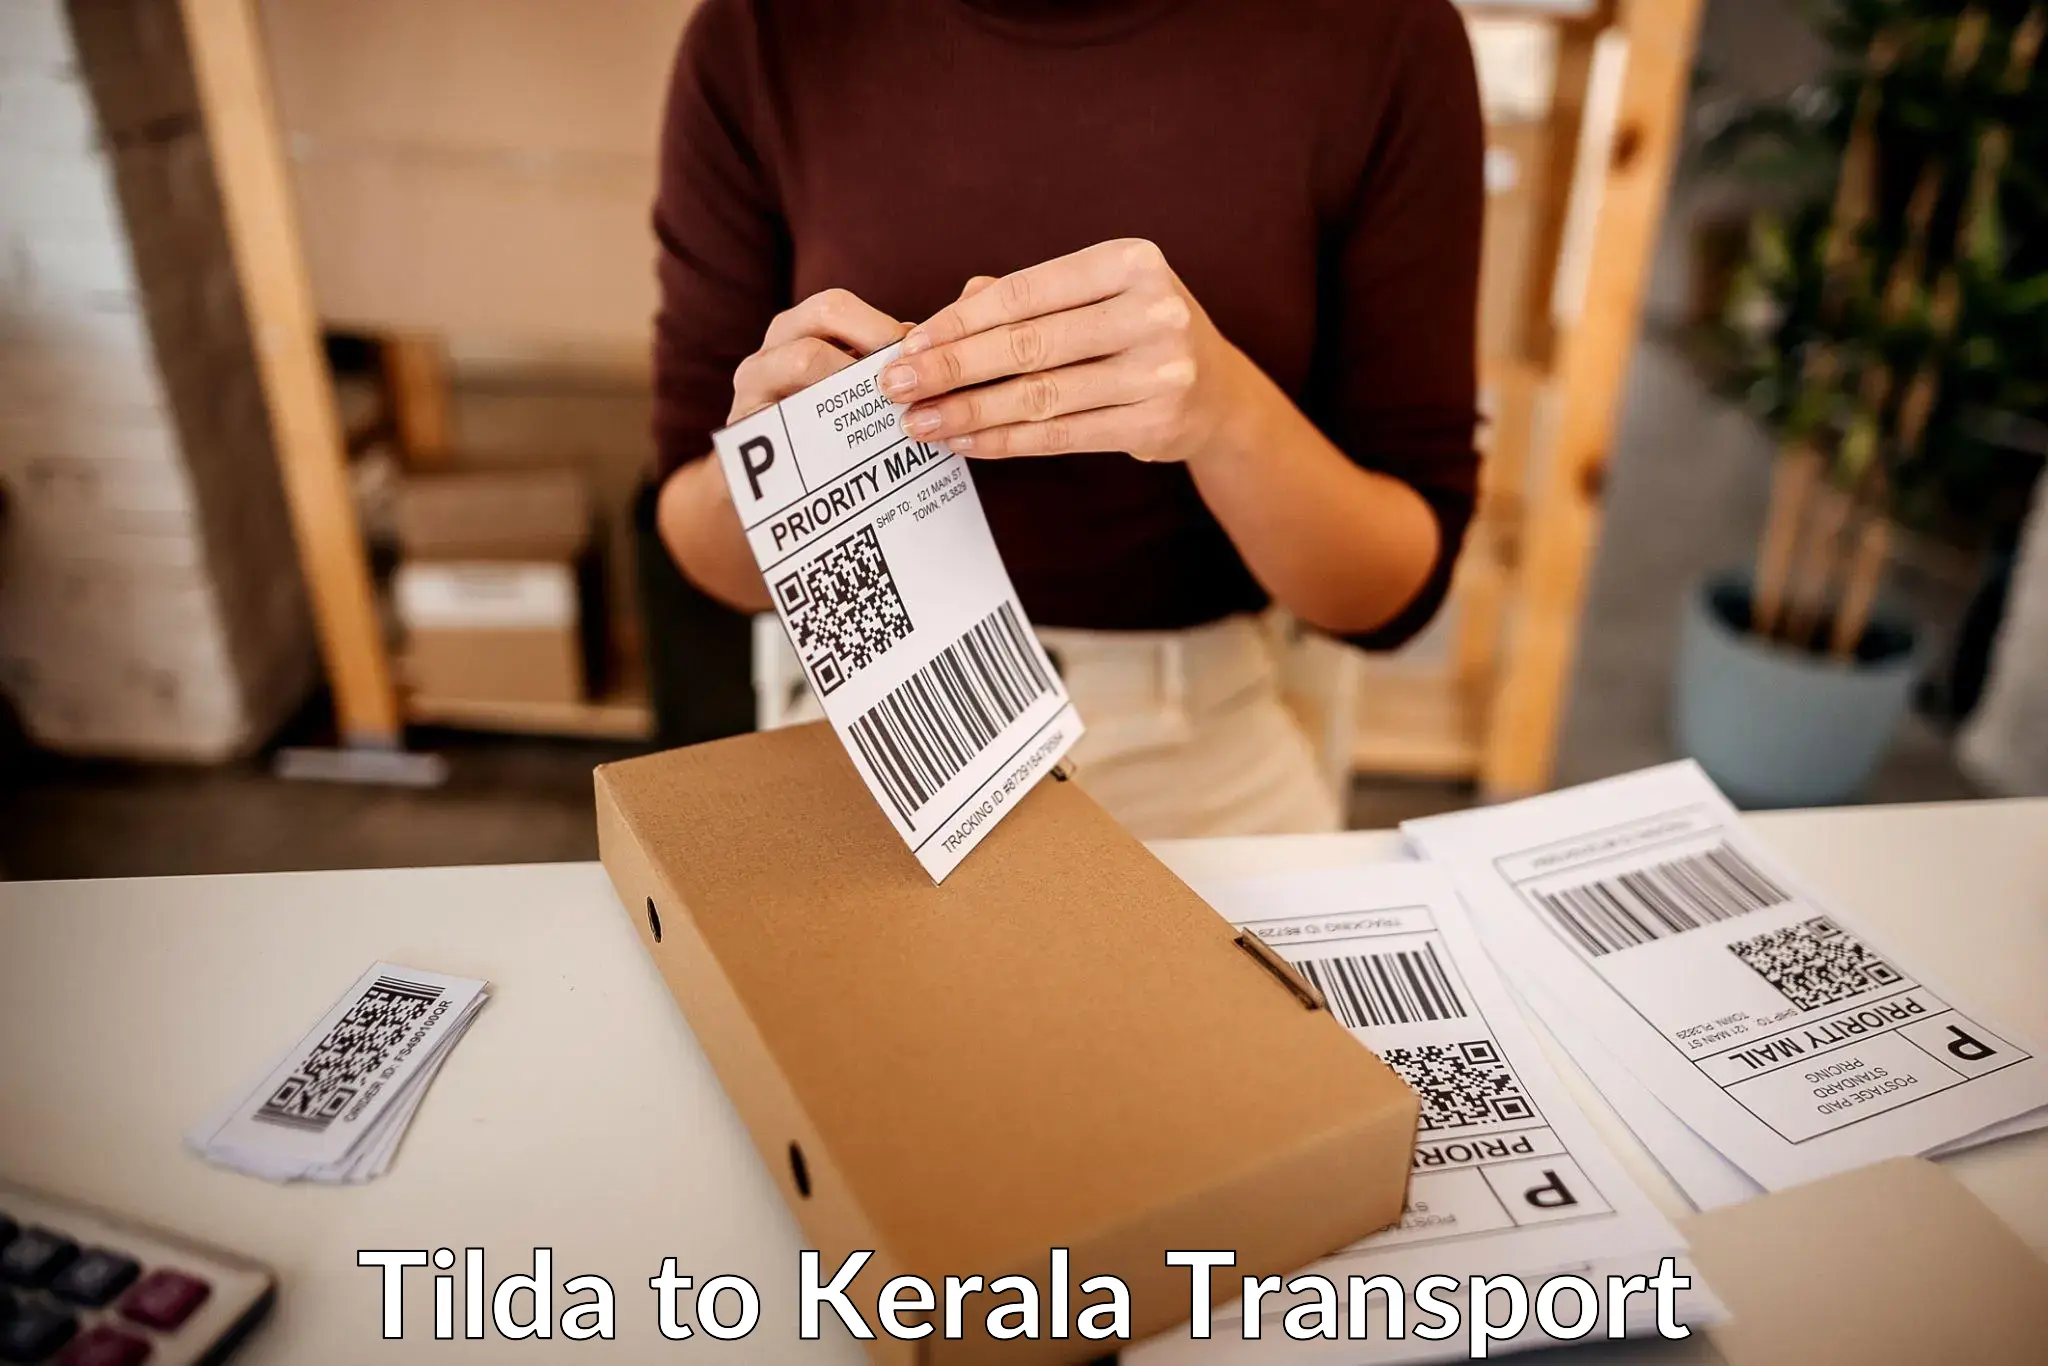 Intercity transport in Tilda to Munnar